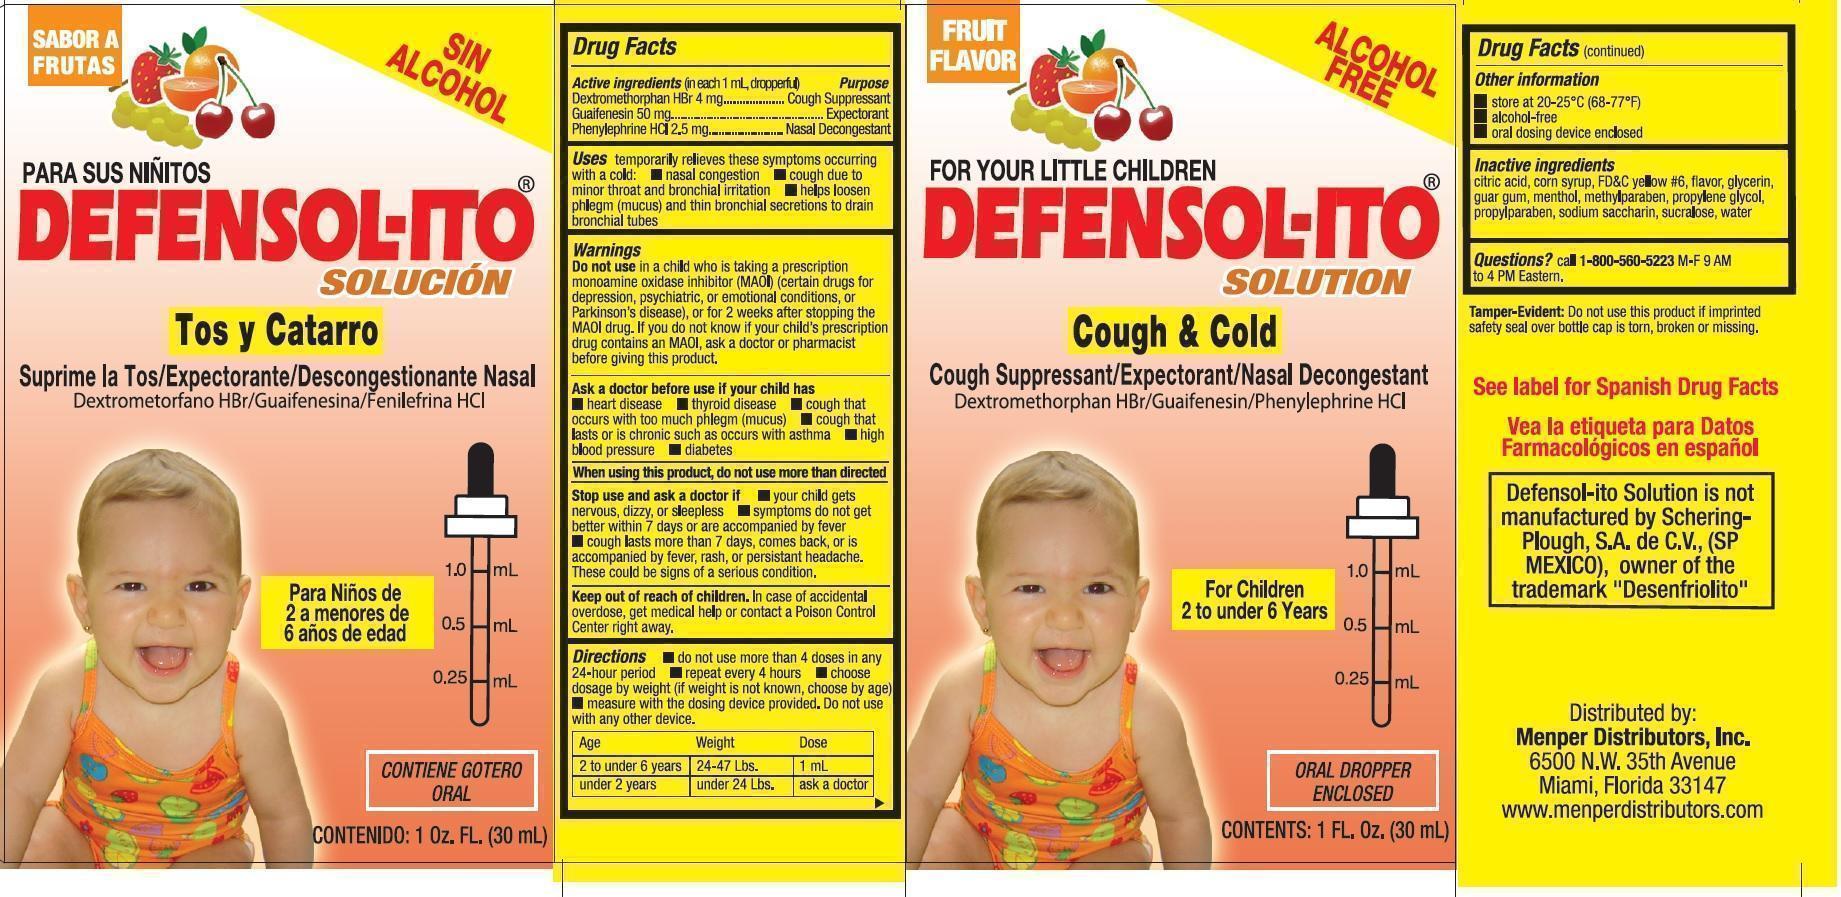 Defensol-ito Label